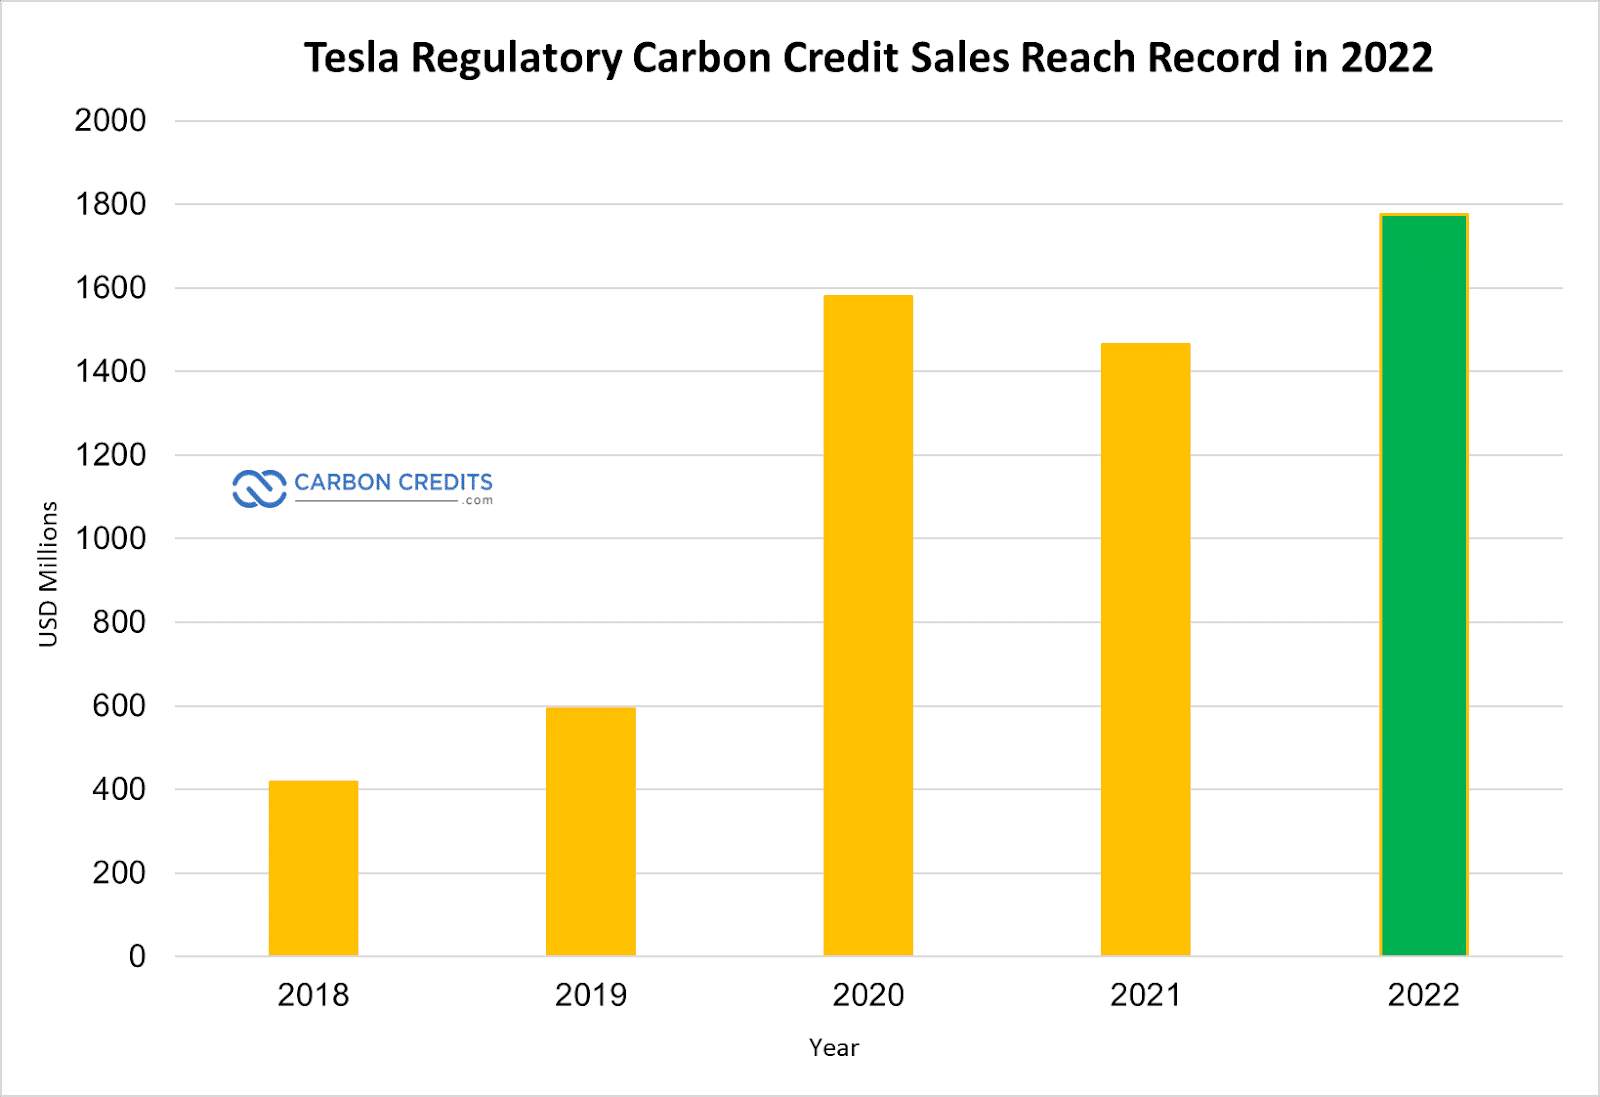 Las ventas de créditos de carbono de Tesla alcanzan un récord de 1.78 millones de dólares en 2022